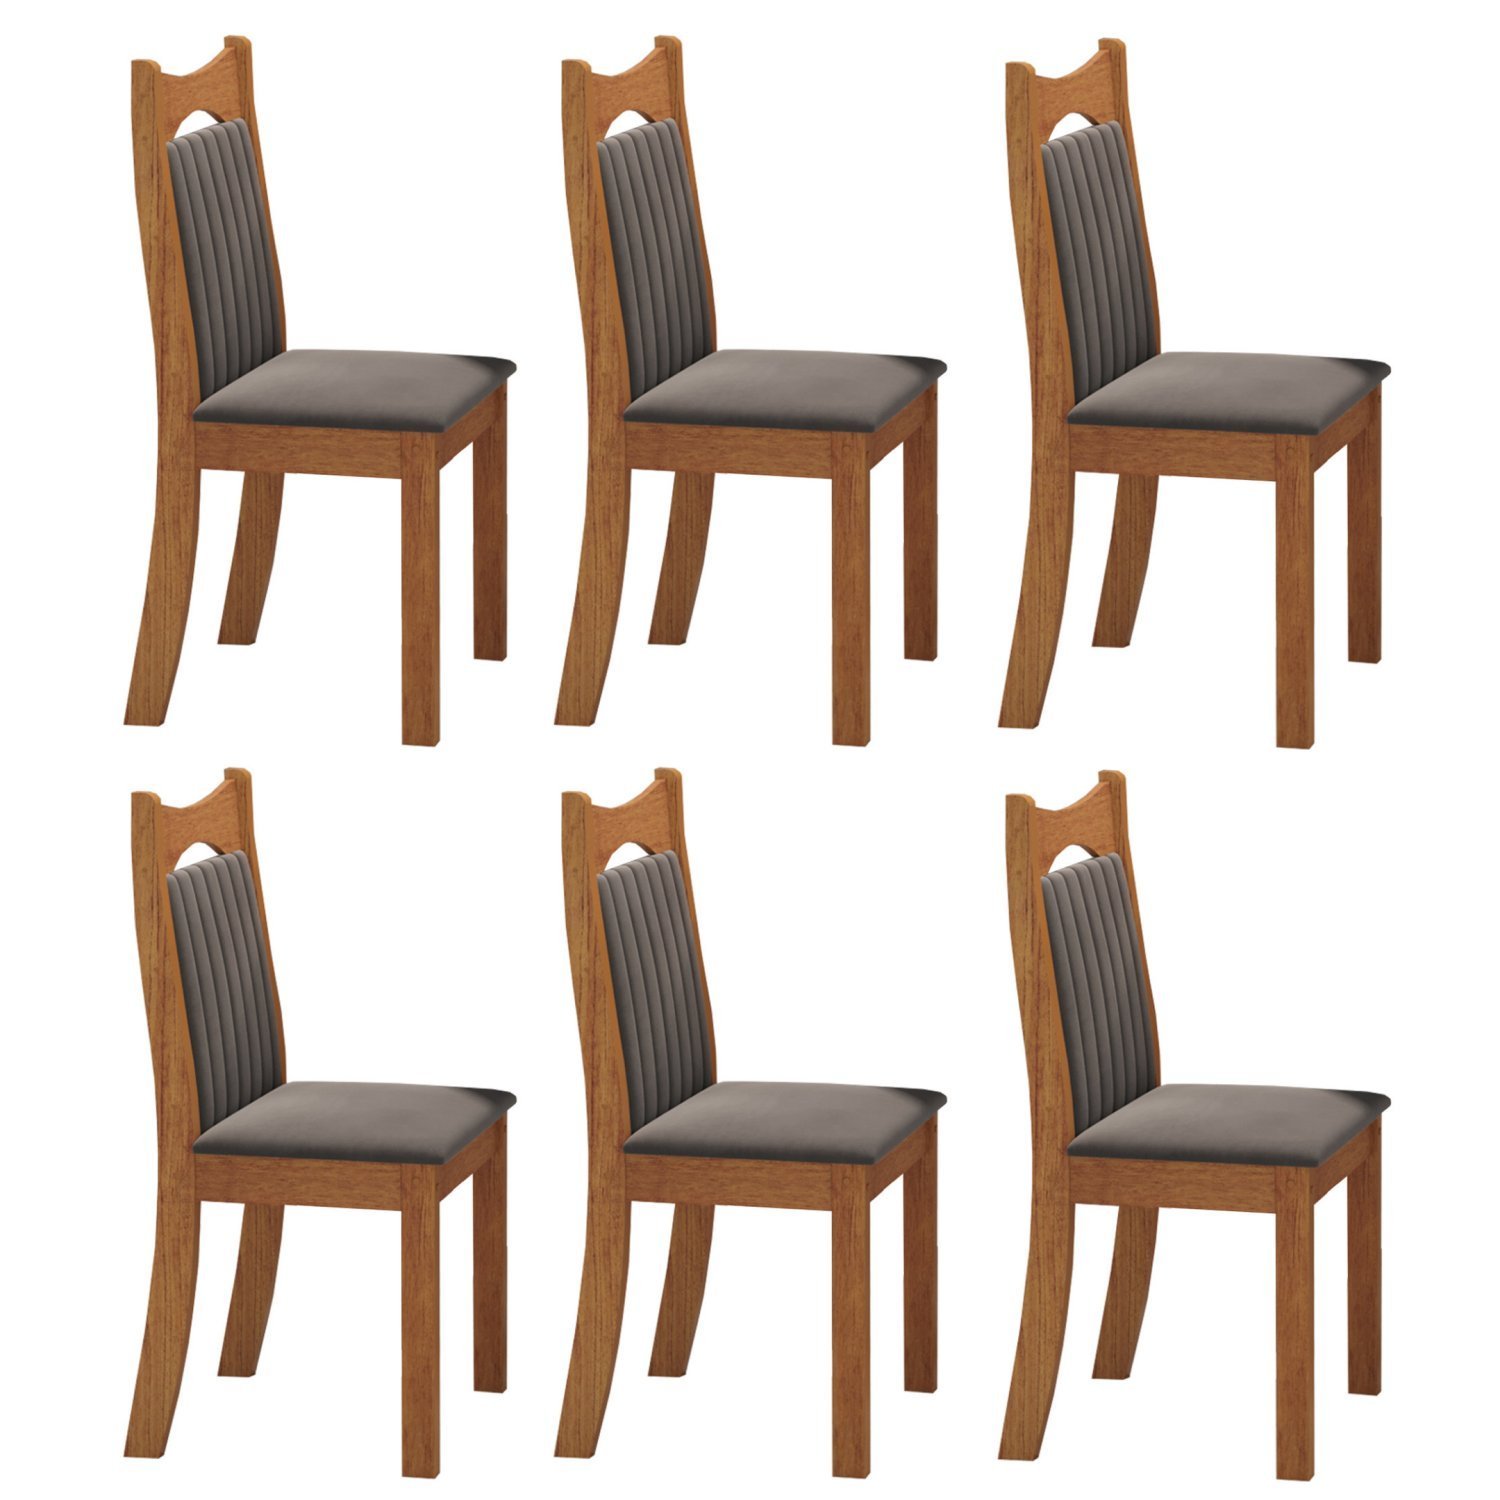 Kit com 6 Cadeiras para Sala de Jantar Mdp/mdf Dalas - 2